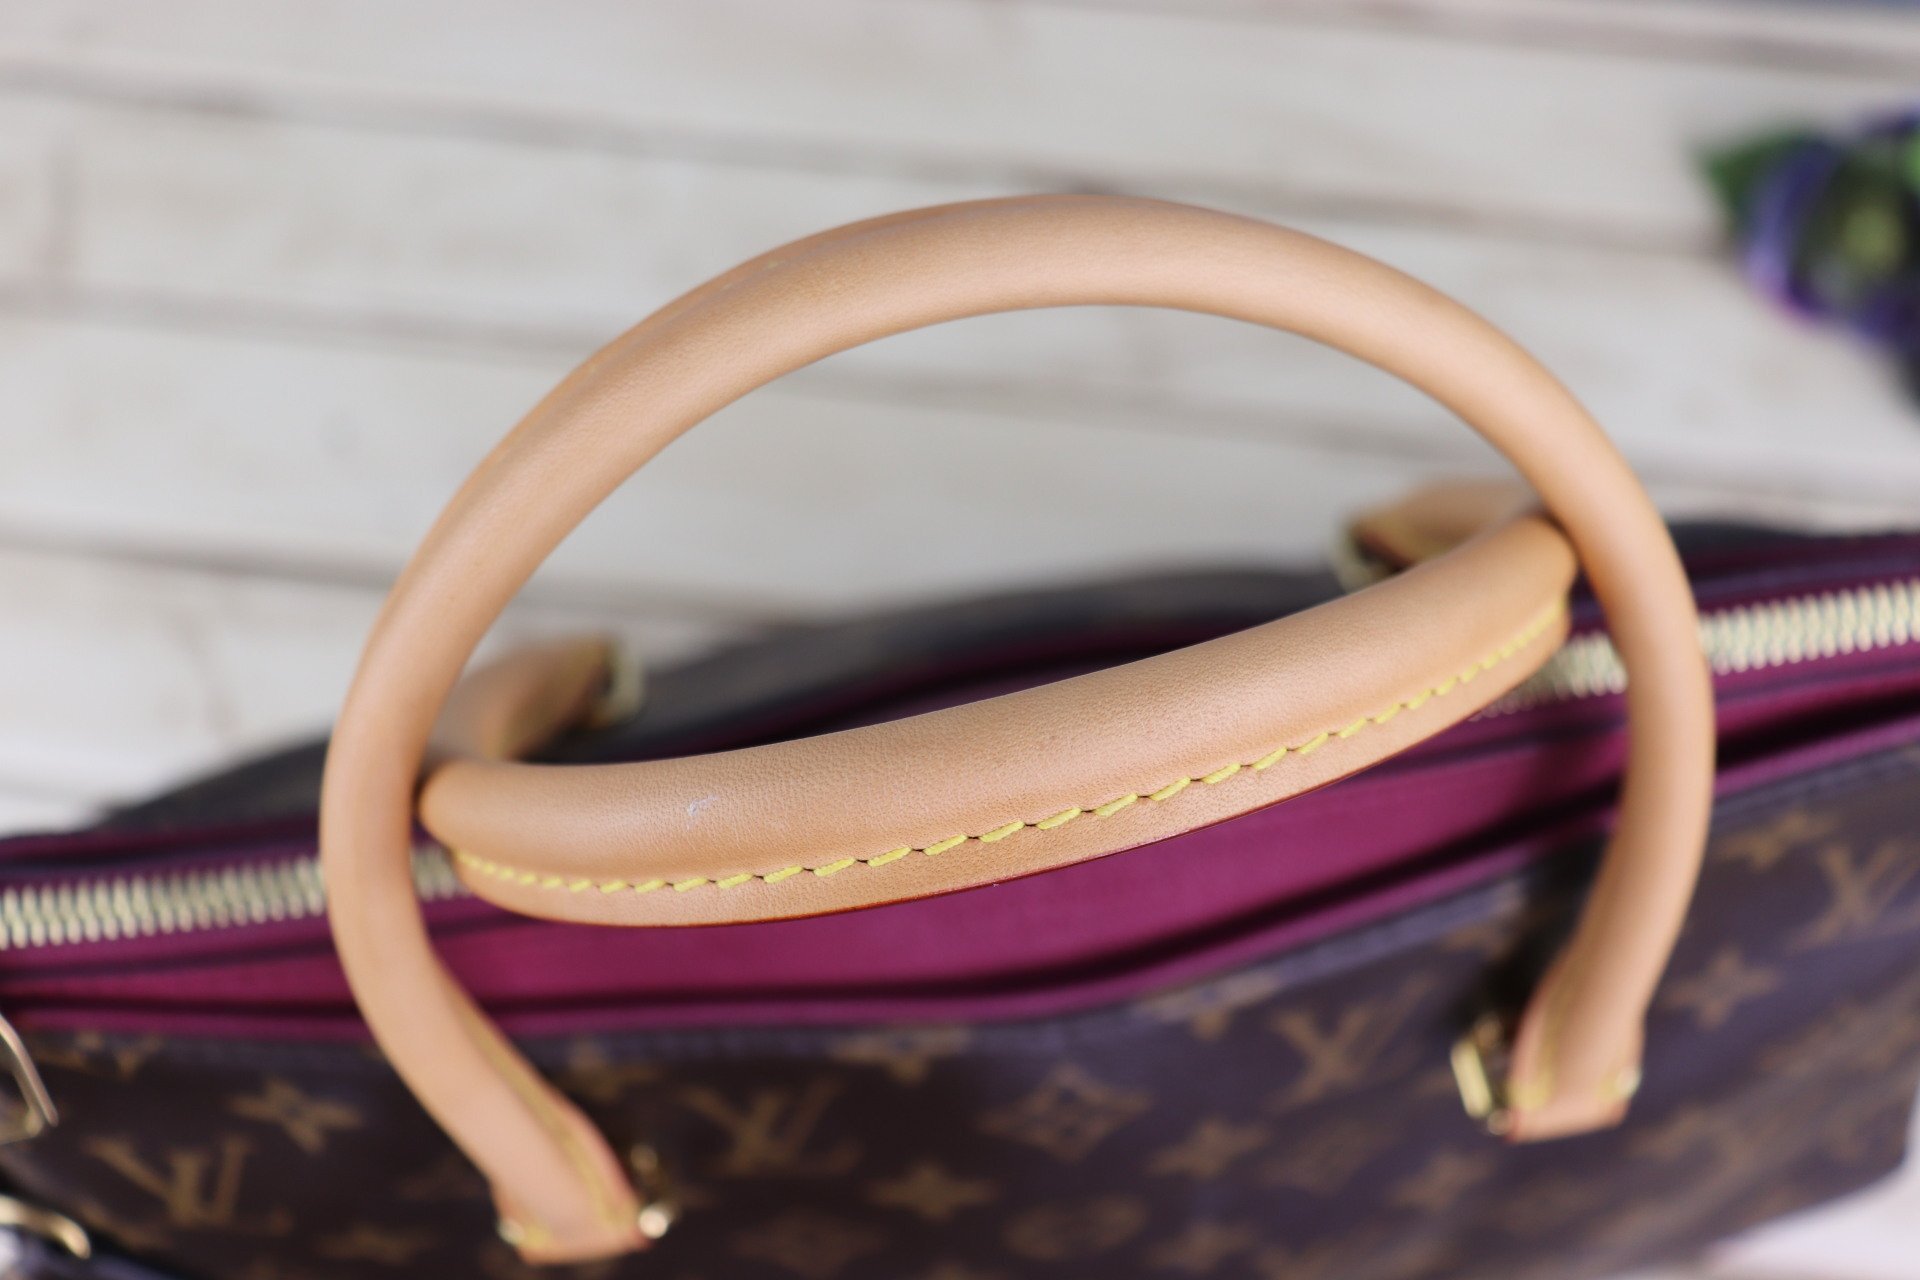 Louis Vuitton, Bags, Authentic Louis Vuitton Pallas Mm Shoulder Bag  Handbag Aurore